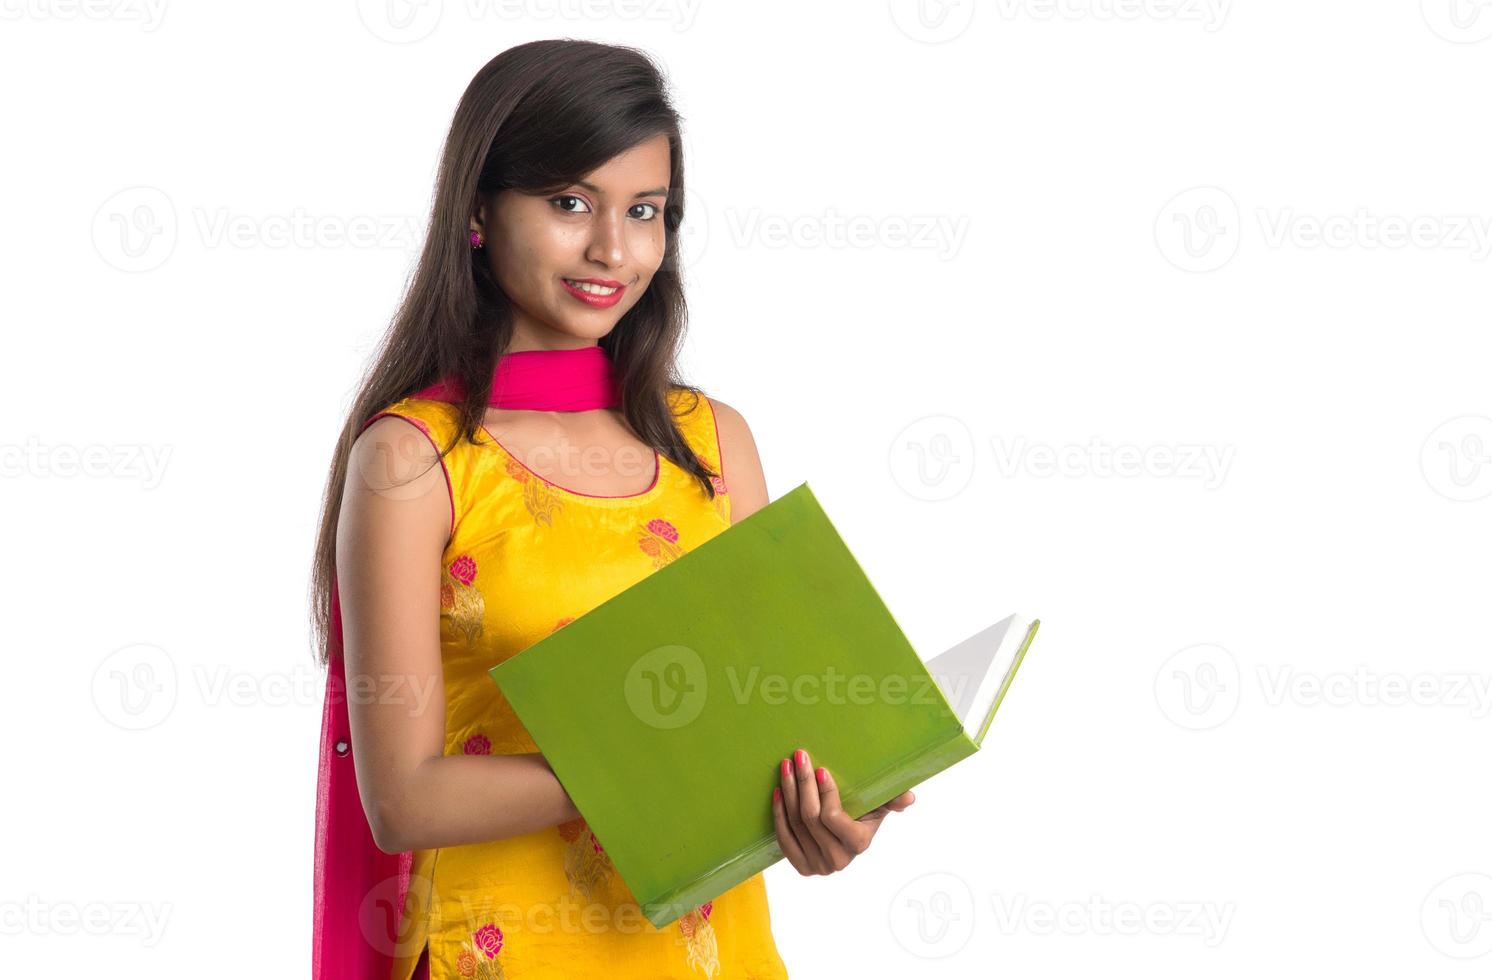 ganska ung flicka håller bok och poserar på vit bakgrund foto